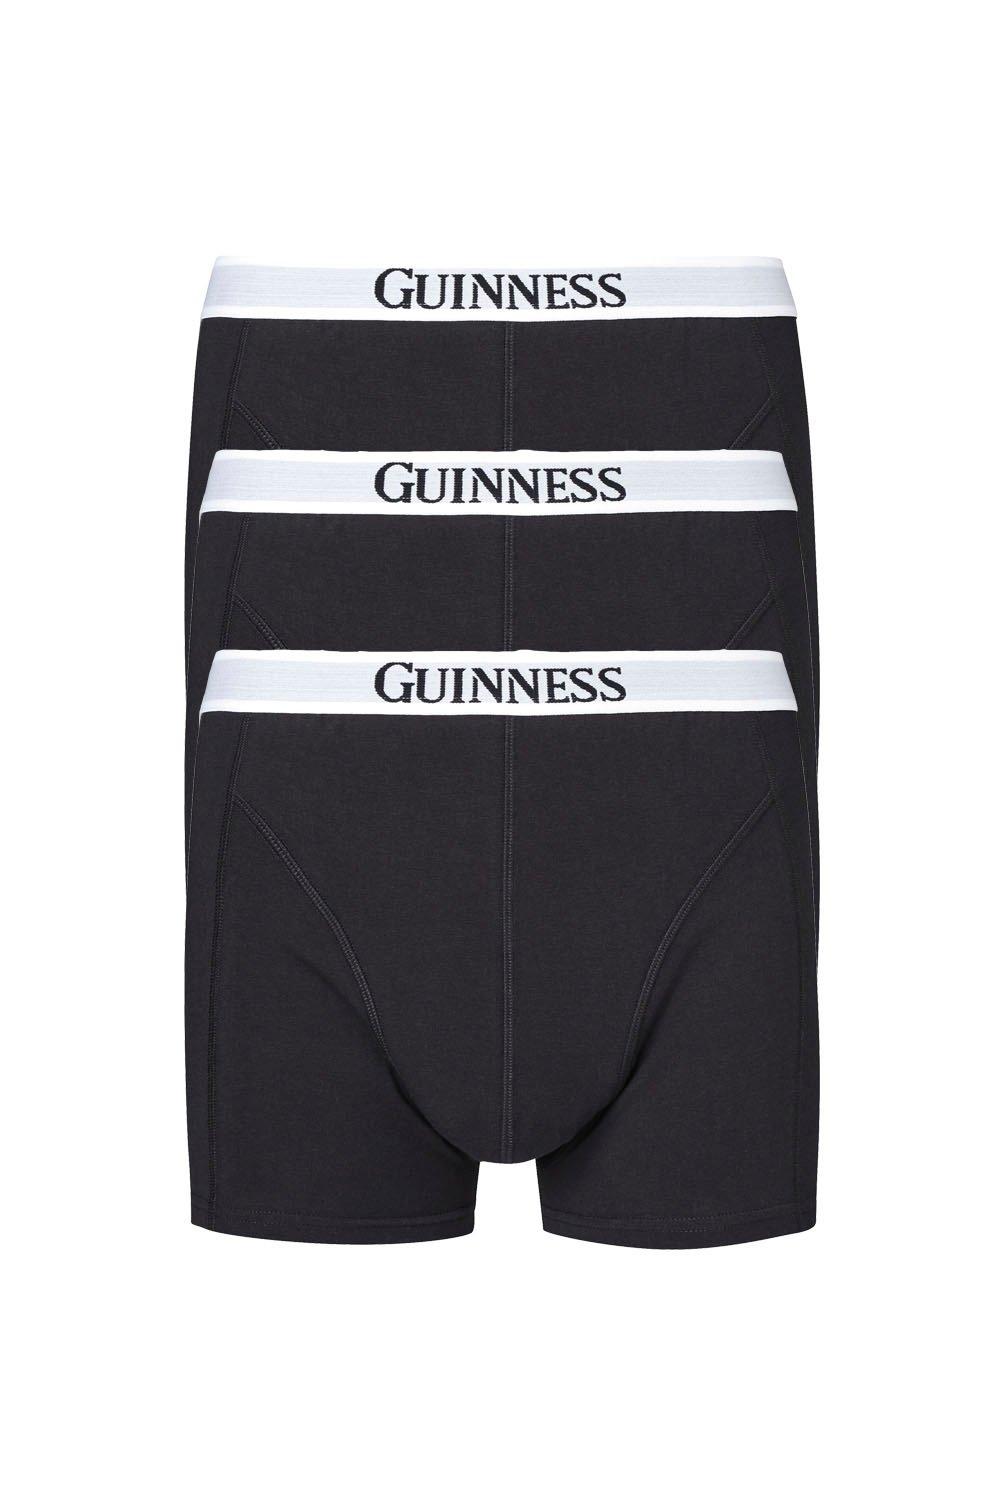 Guinness™ 3 Pack Trunks